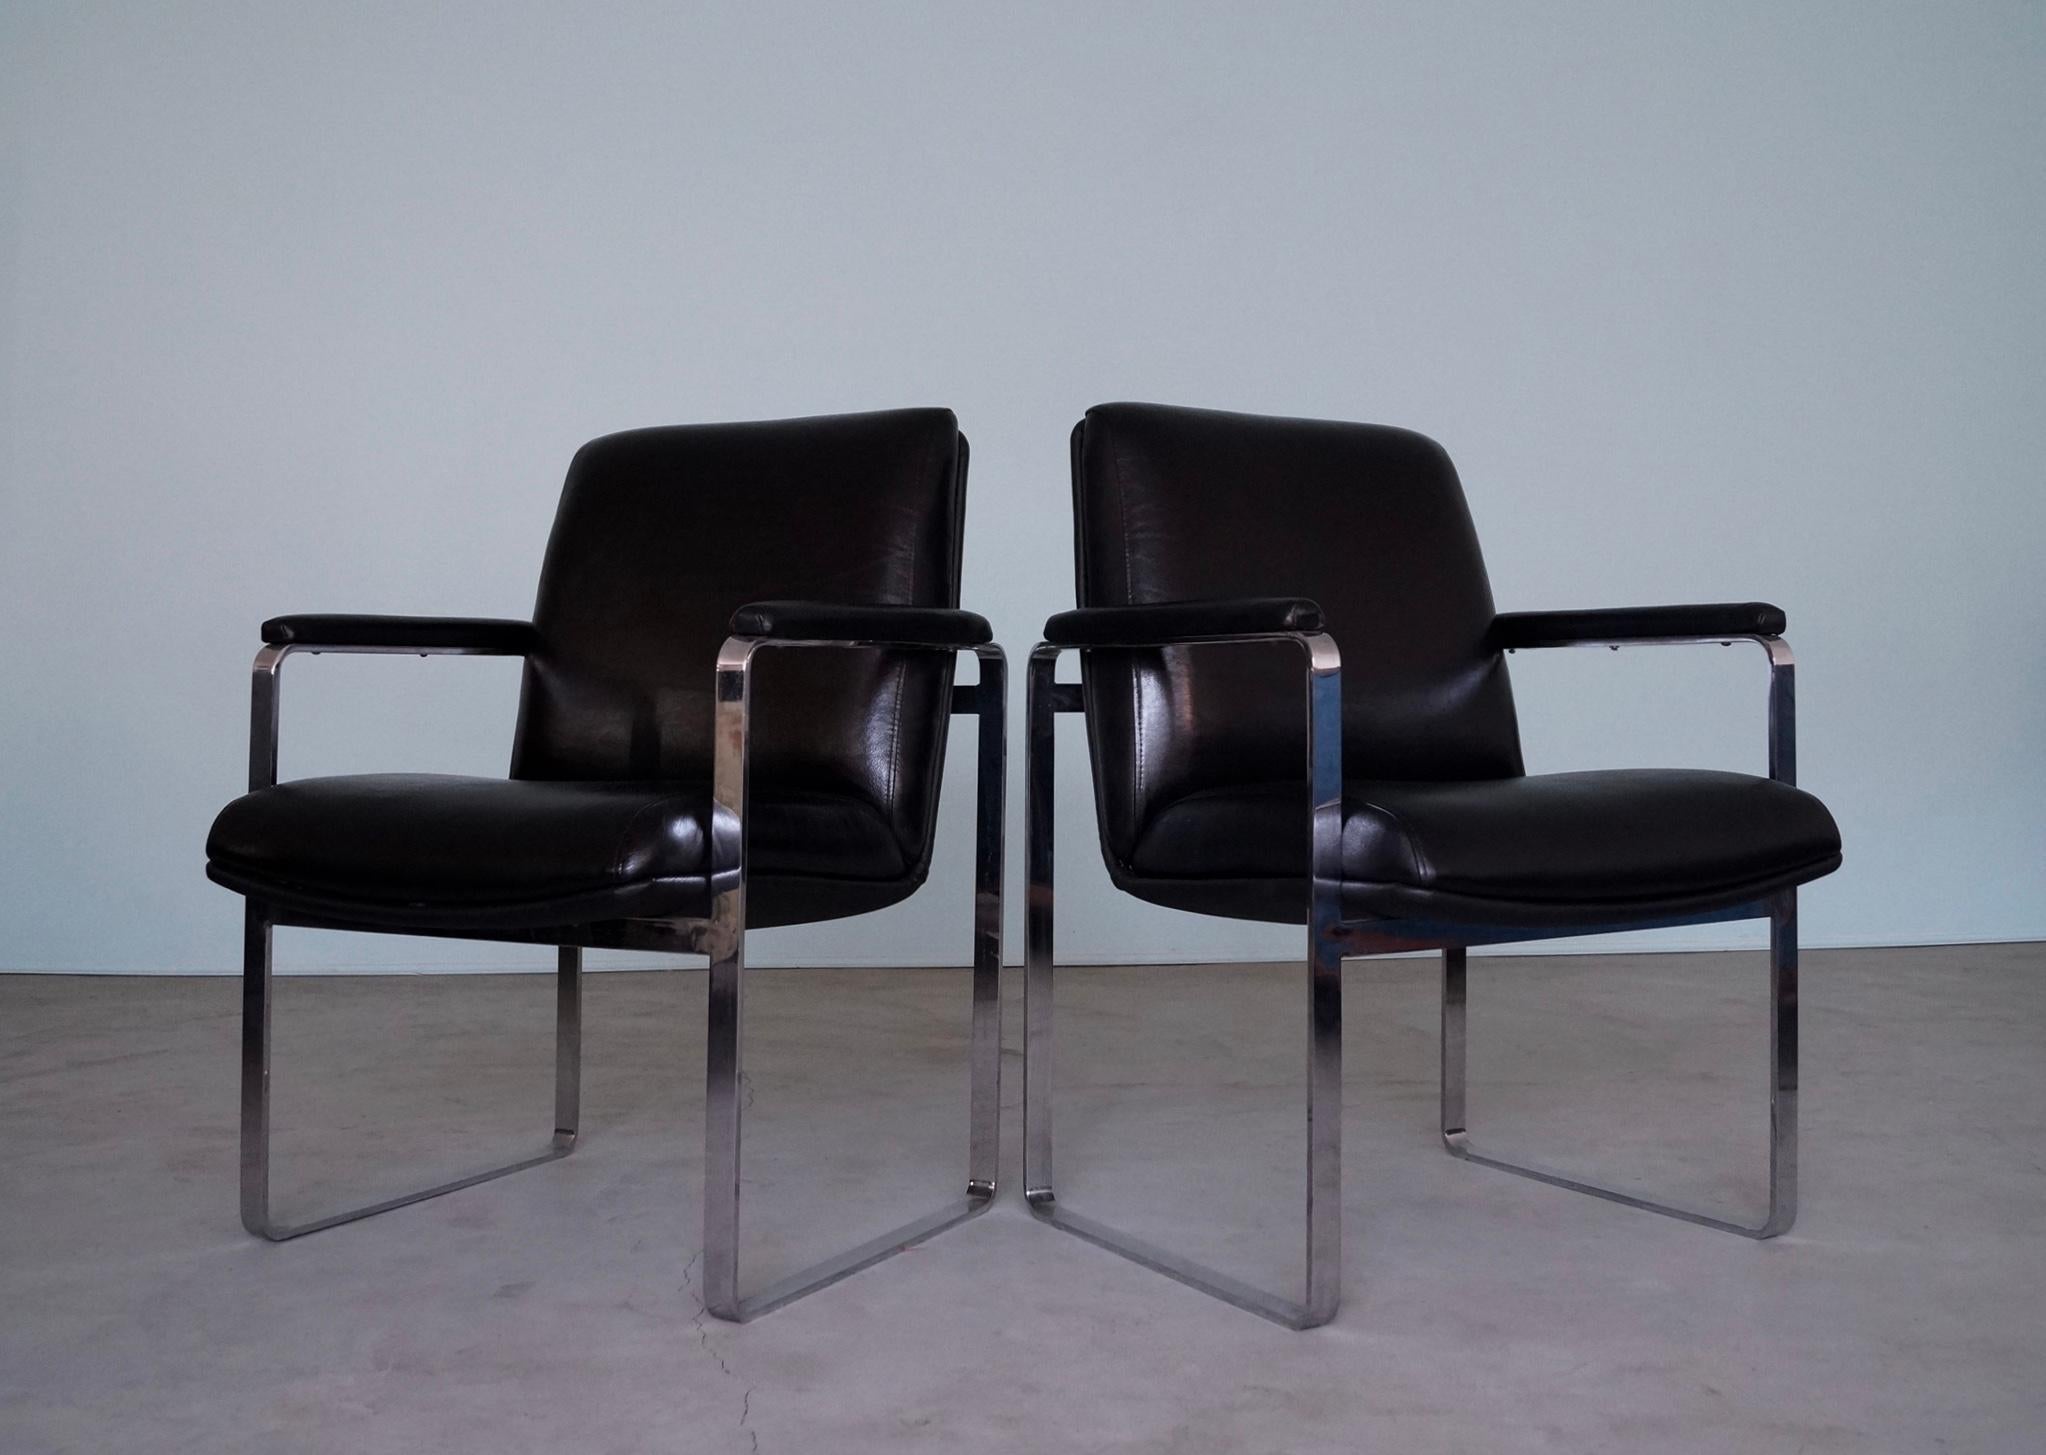 Wir haben dieses unglaubliche Paar von Mid-Century Modern Lounge Stühlen zu verkaufen. Sie stammen aus den 1960er Jahren und sind ein seltenes Design. Sie wurden zuvor professionell neu gepolstert in Vintage schwarzem Leder, und sind